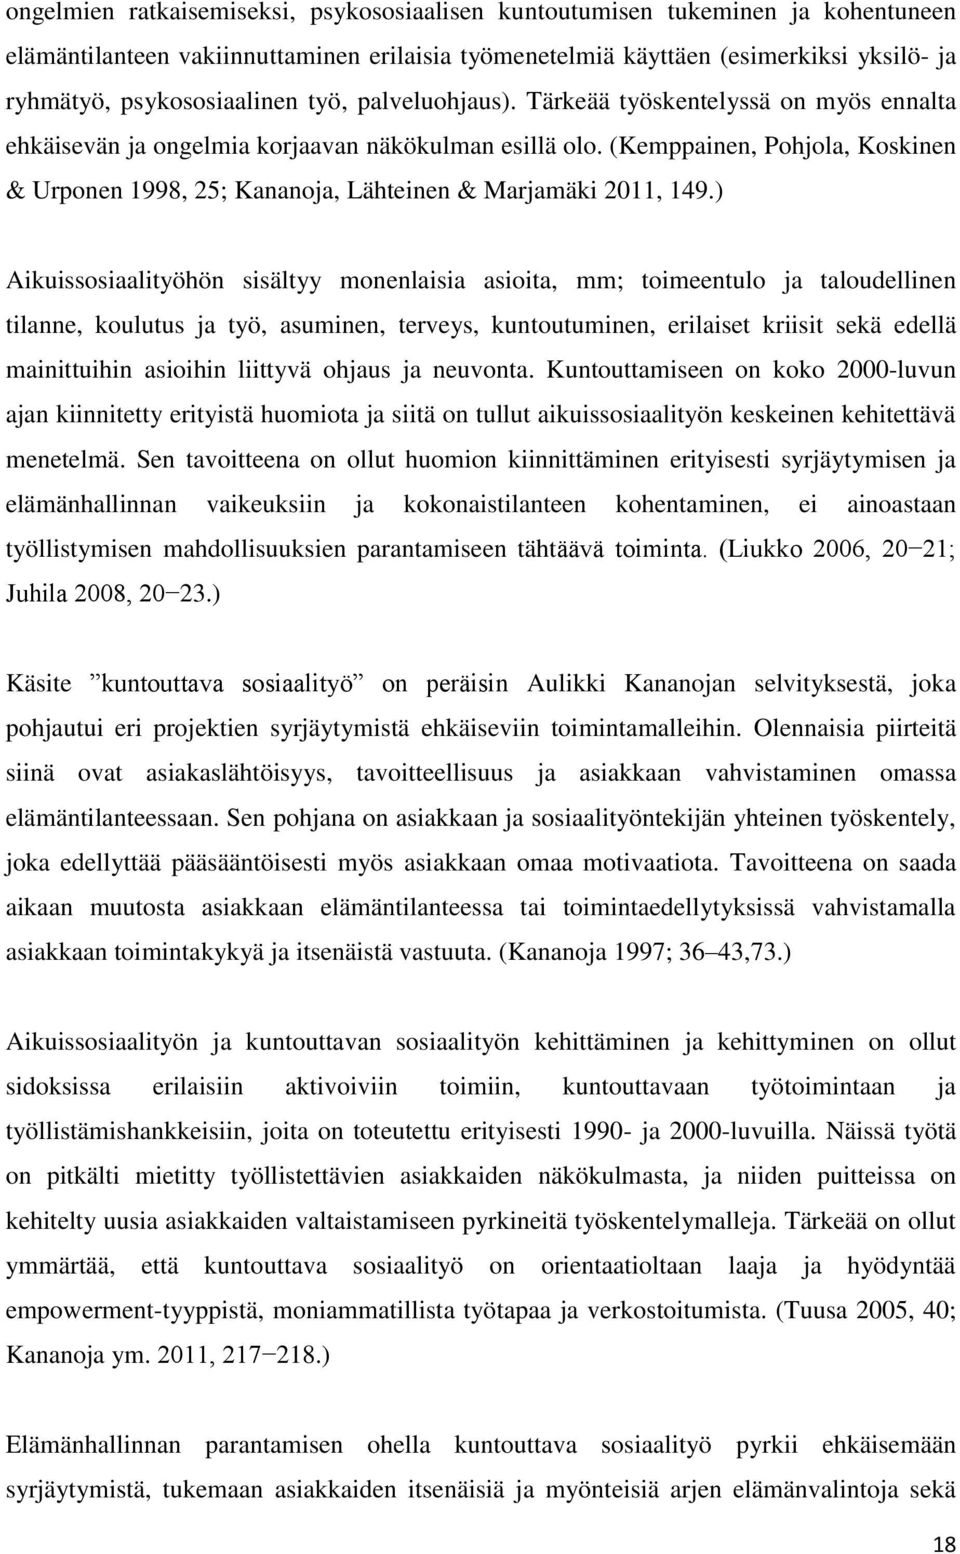 (Kemppainen, Pohjola, Koskinen & Urponen 1998, 25; Kananoja, Lähteinen & Marjamäki 2011, 149.